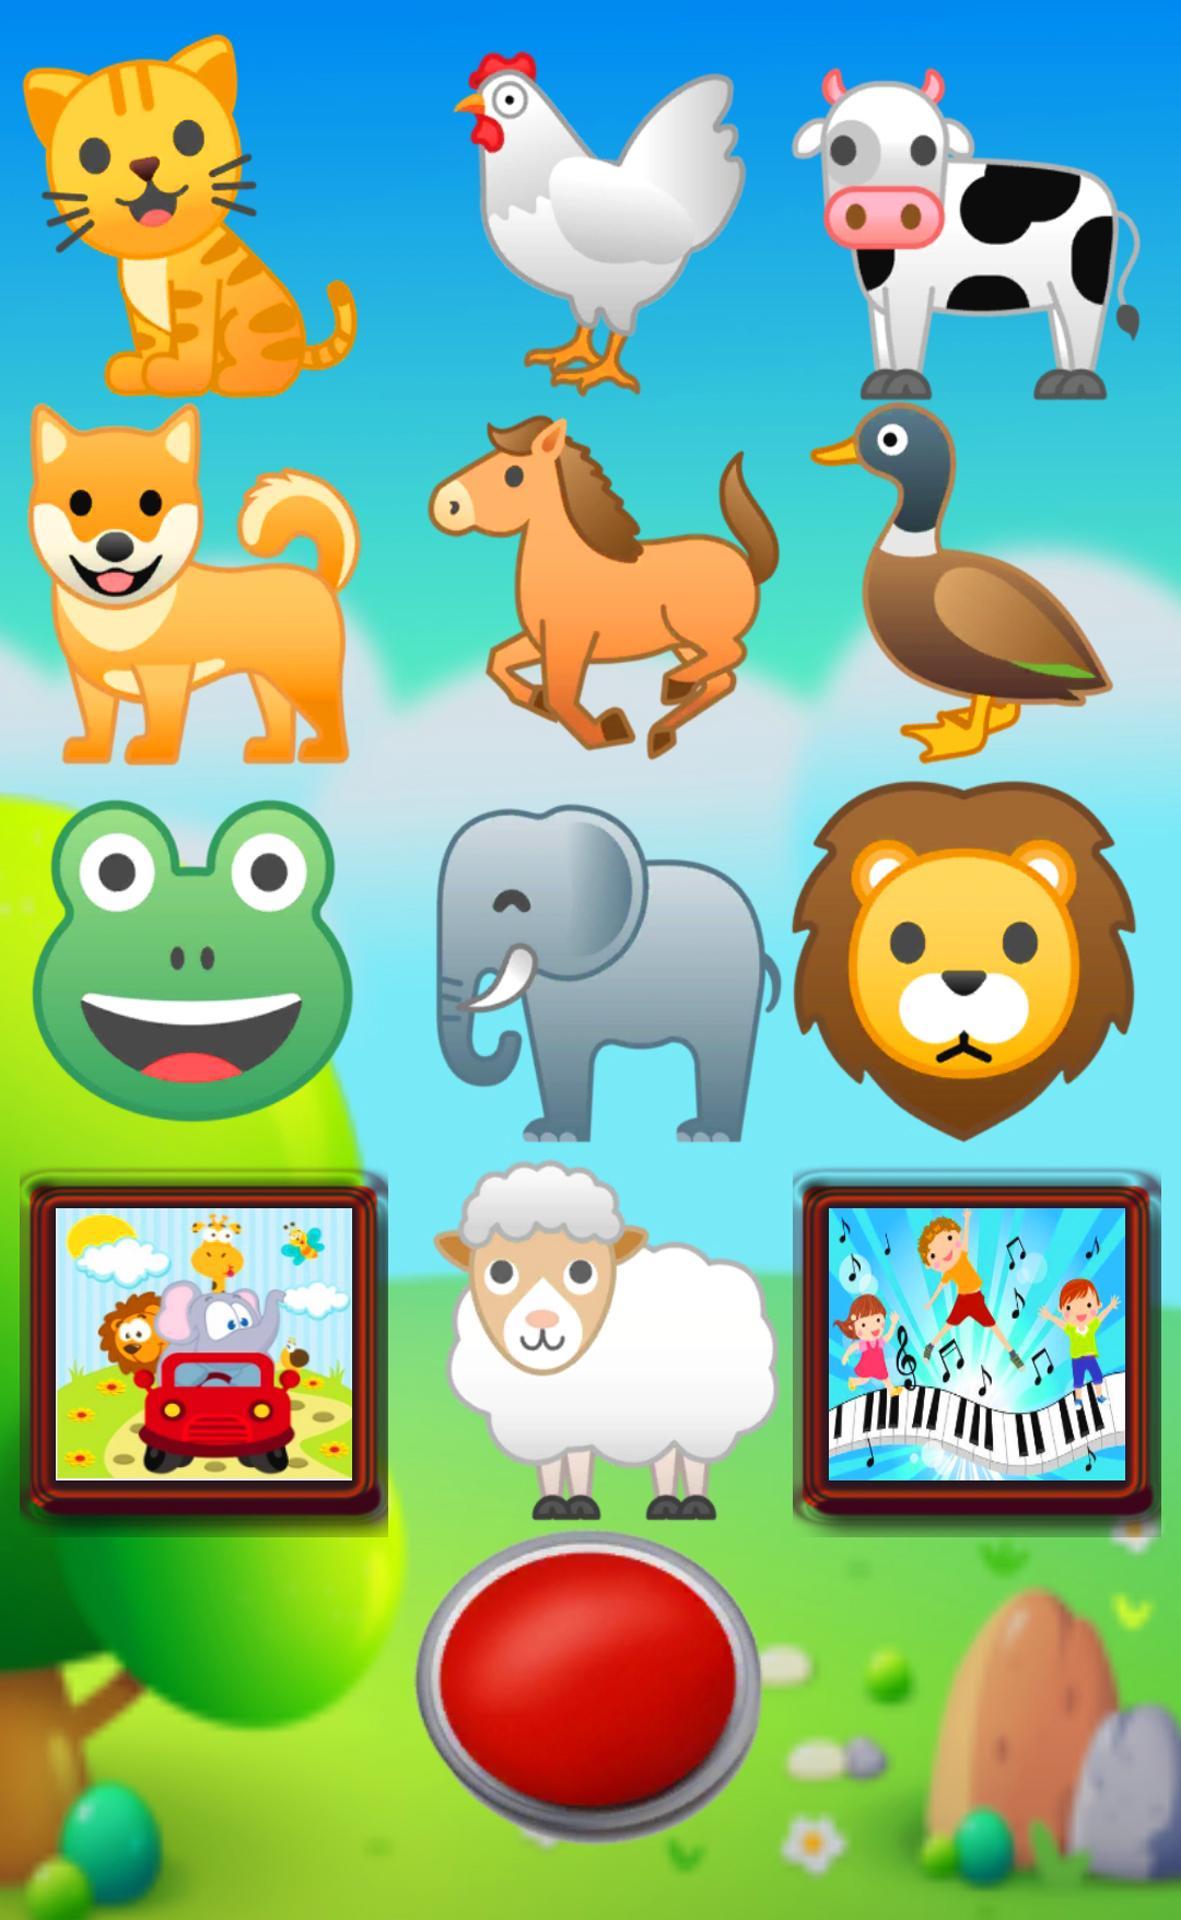 الوان, حيوانات , لعب اطفال : العاب اطفال Toys for Android - APK Download